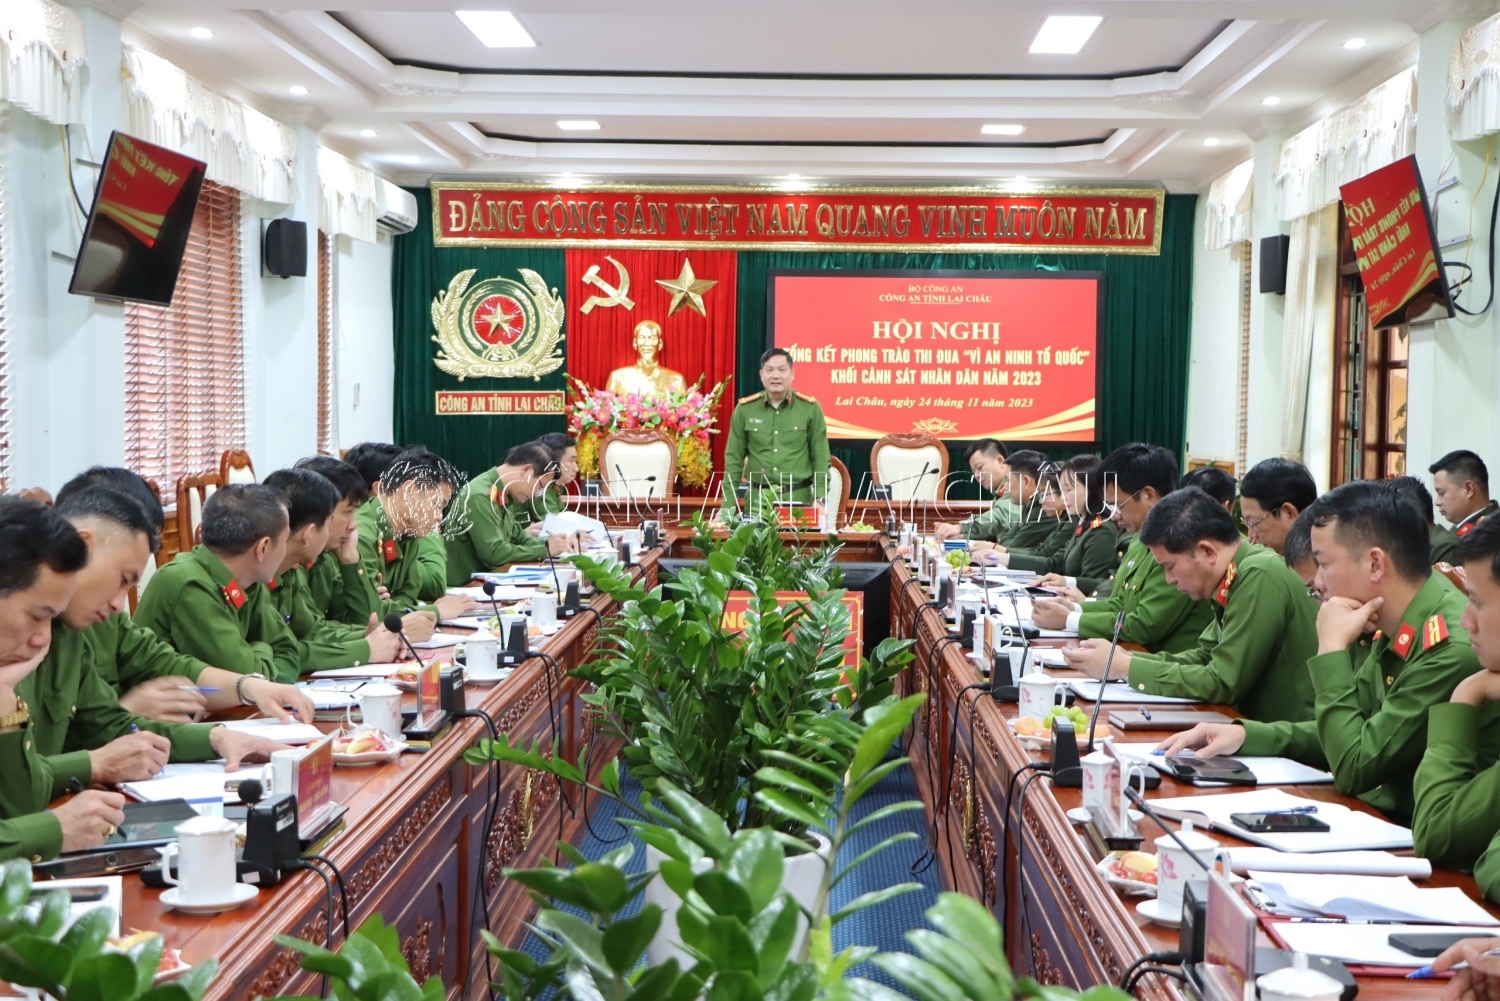 Đại tá Phạm Hải Đăng - Phó giám đốc Công an tỉnh phát biểu chỉ đạo tại Hội nghị